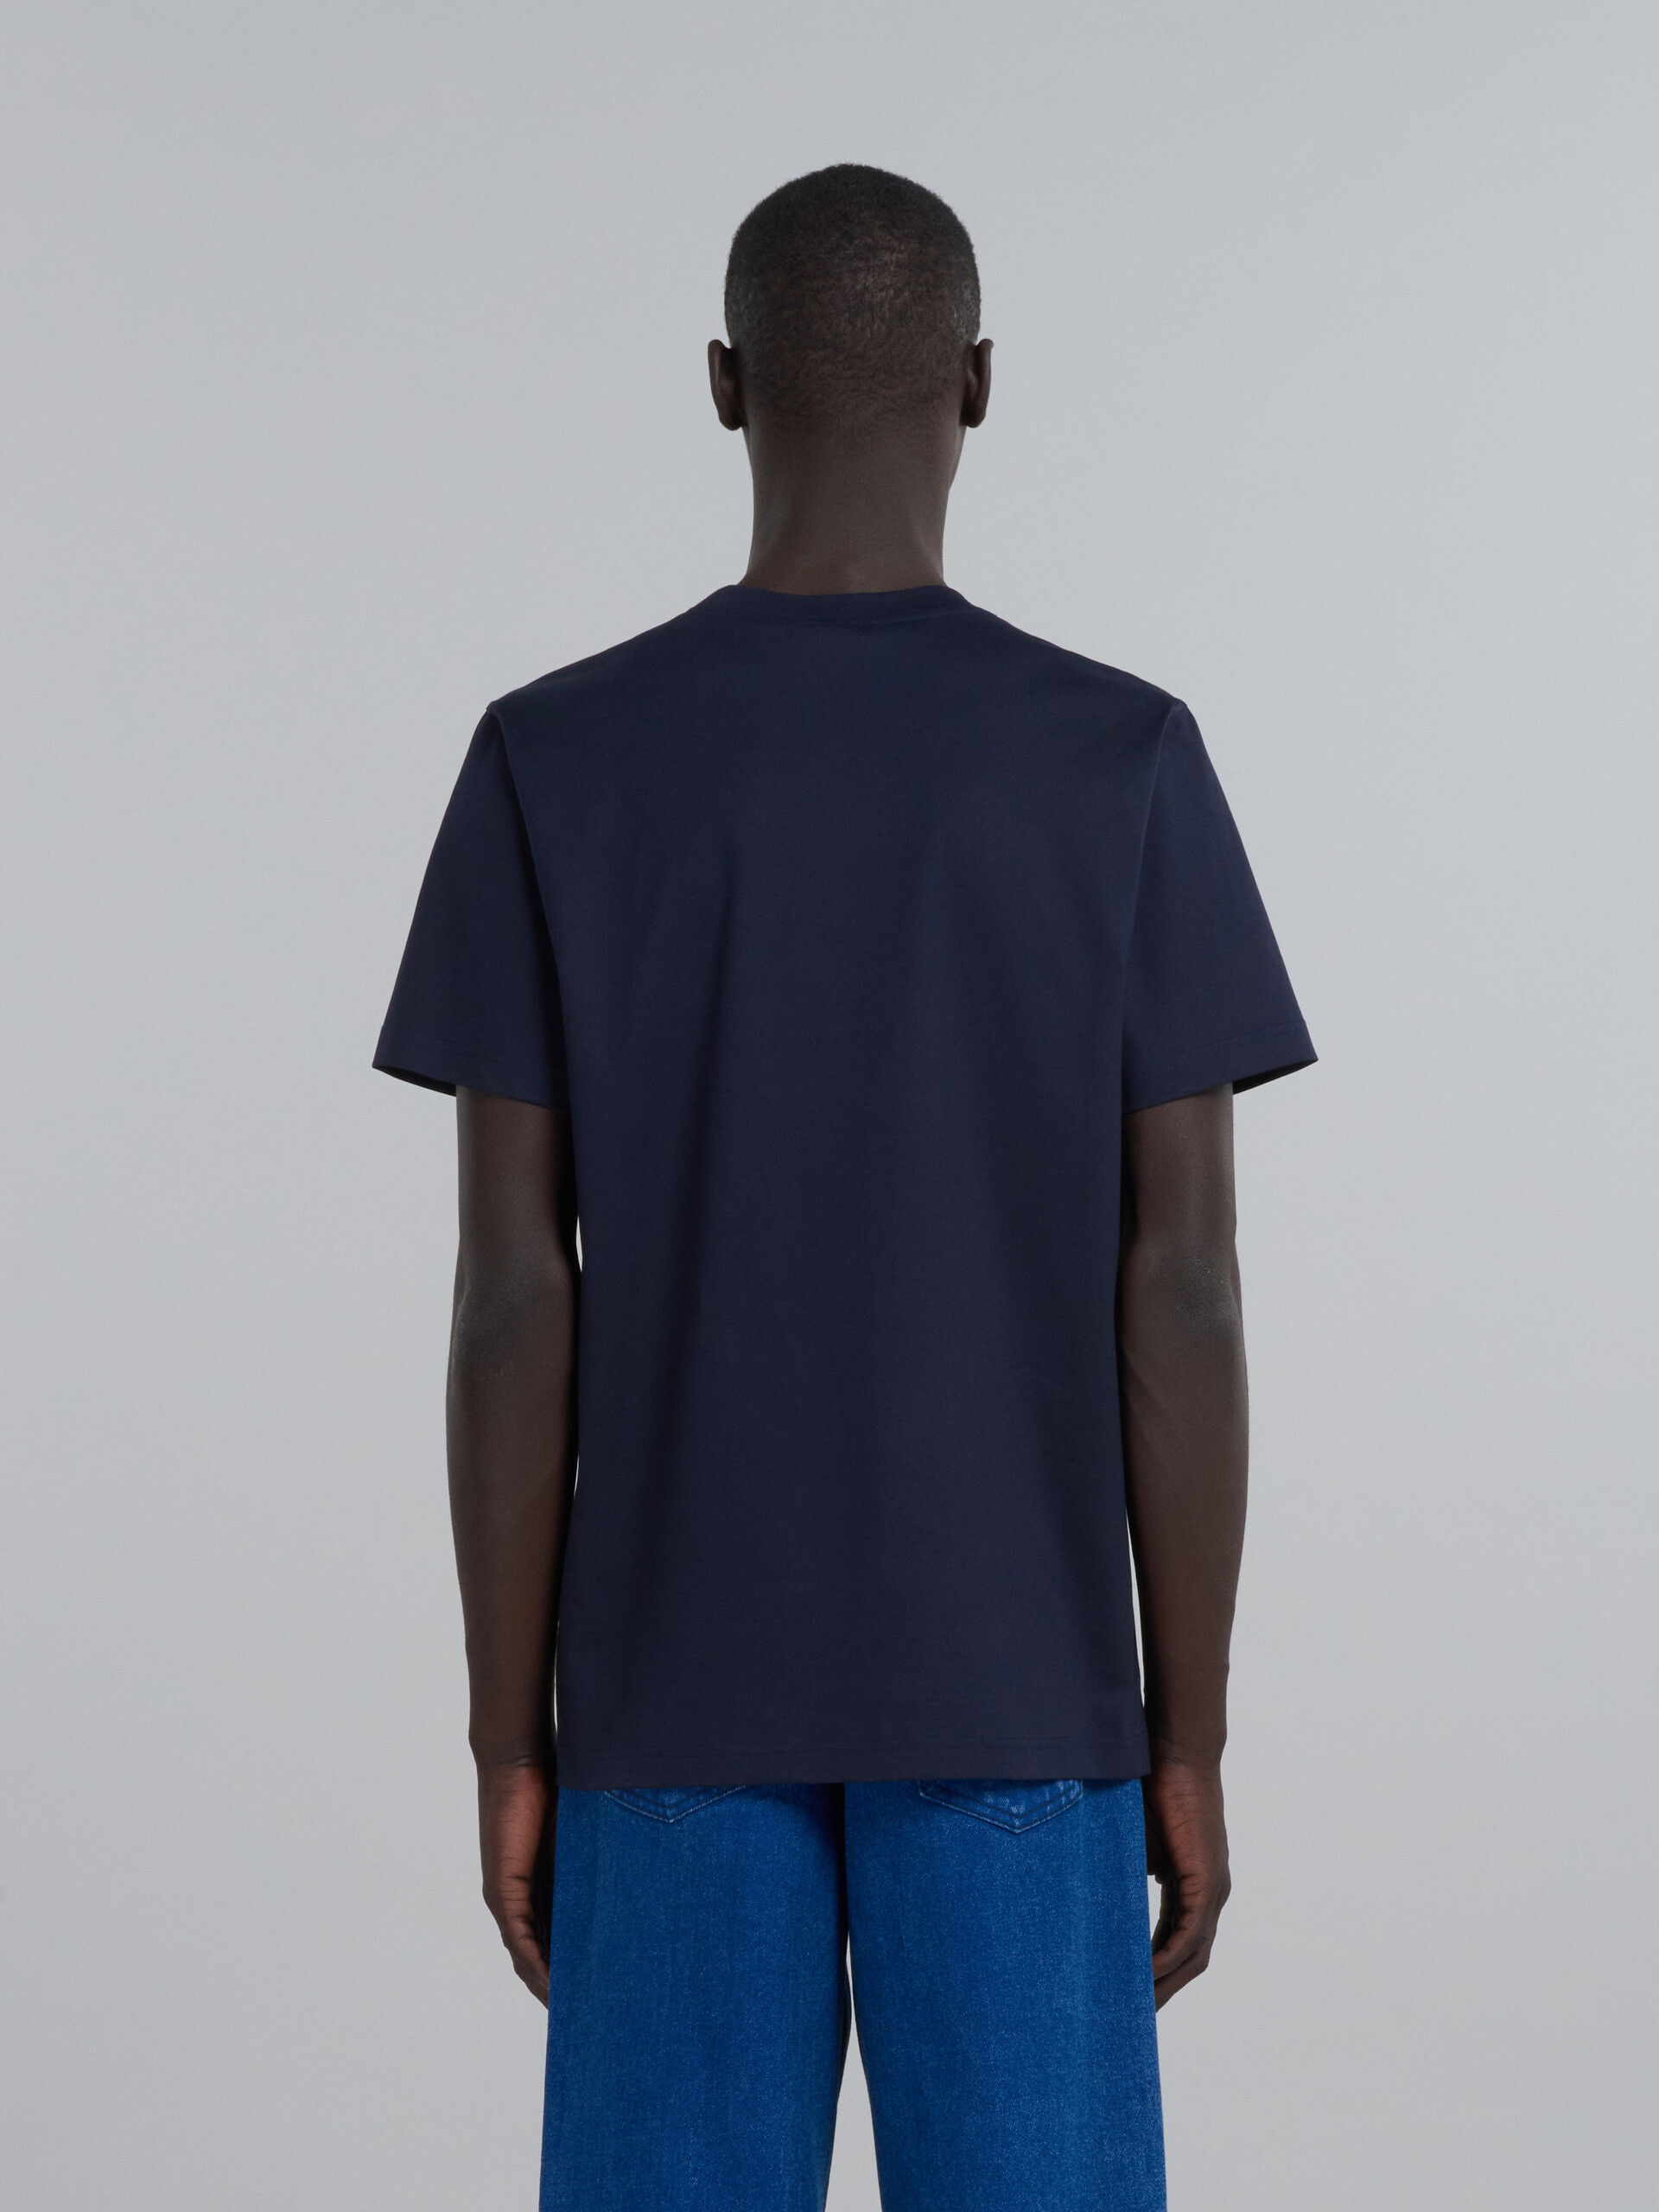 Camiseta azul oscuro de algodón ecológico con logotipo - Camisetas - Image 3